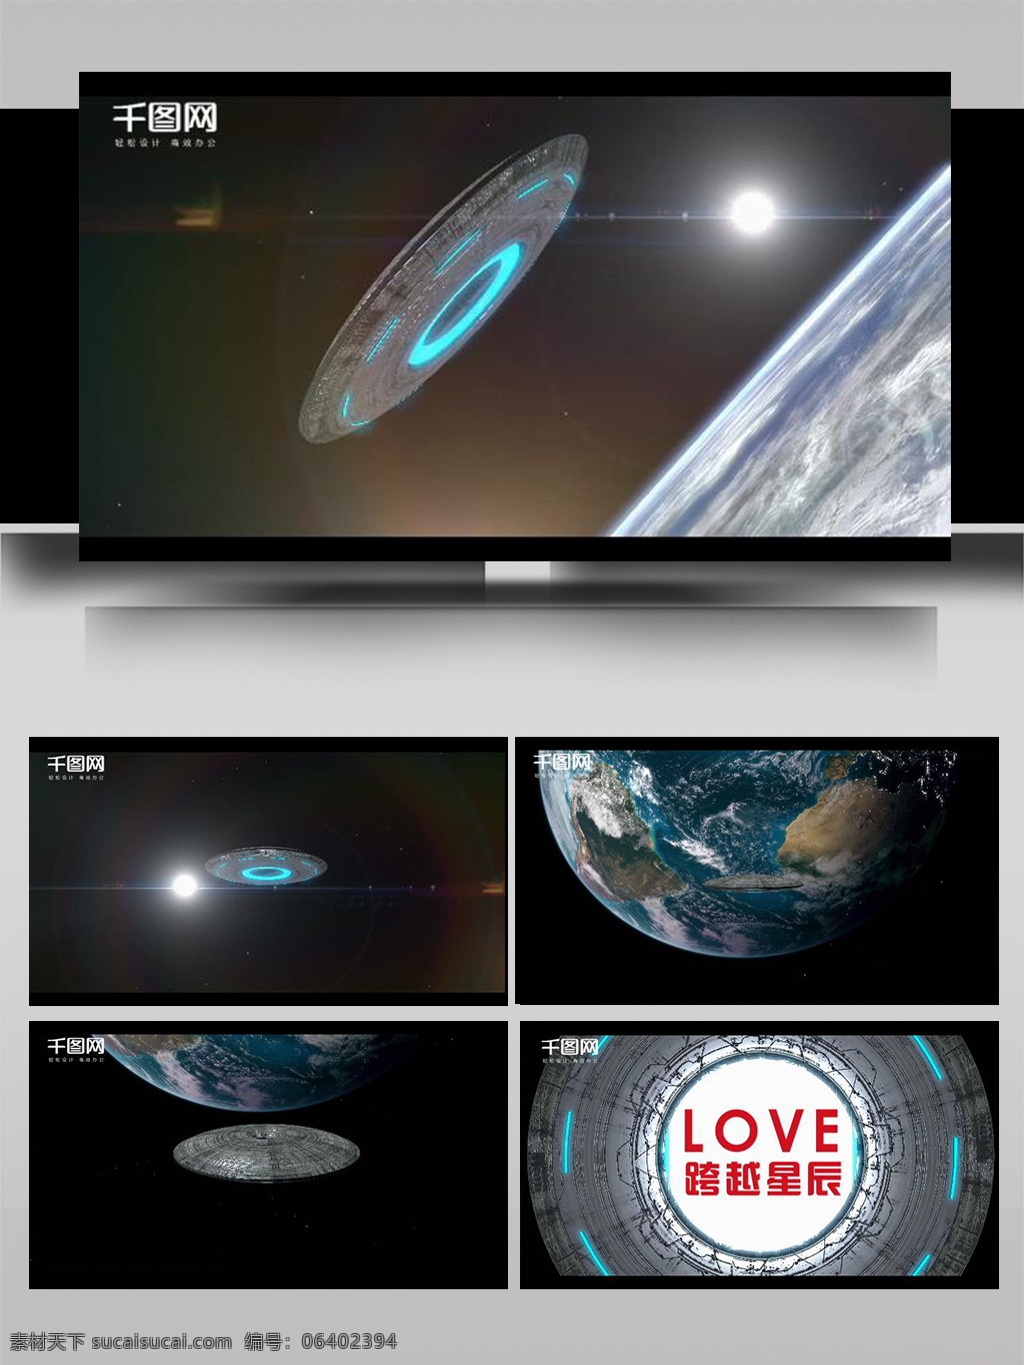 未来 科幻 空间 场景 ae 模板 数字 电影 科技 大气 数据 显示 地球 元素 史诗 函数 黑色 高端 闪亮 背景 片头 宇宙 飞船 ufo 星球 影视